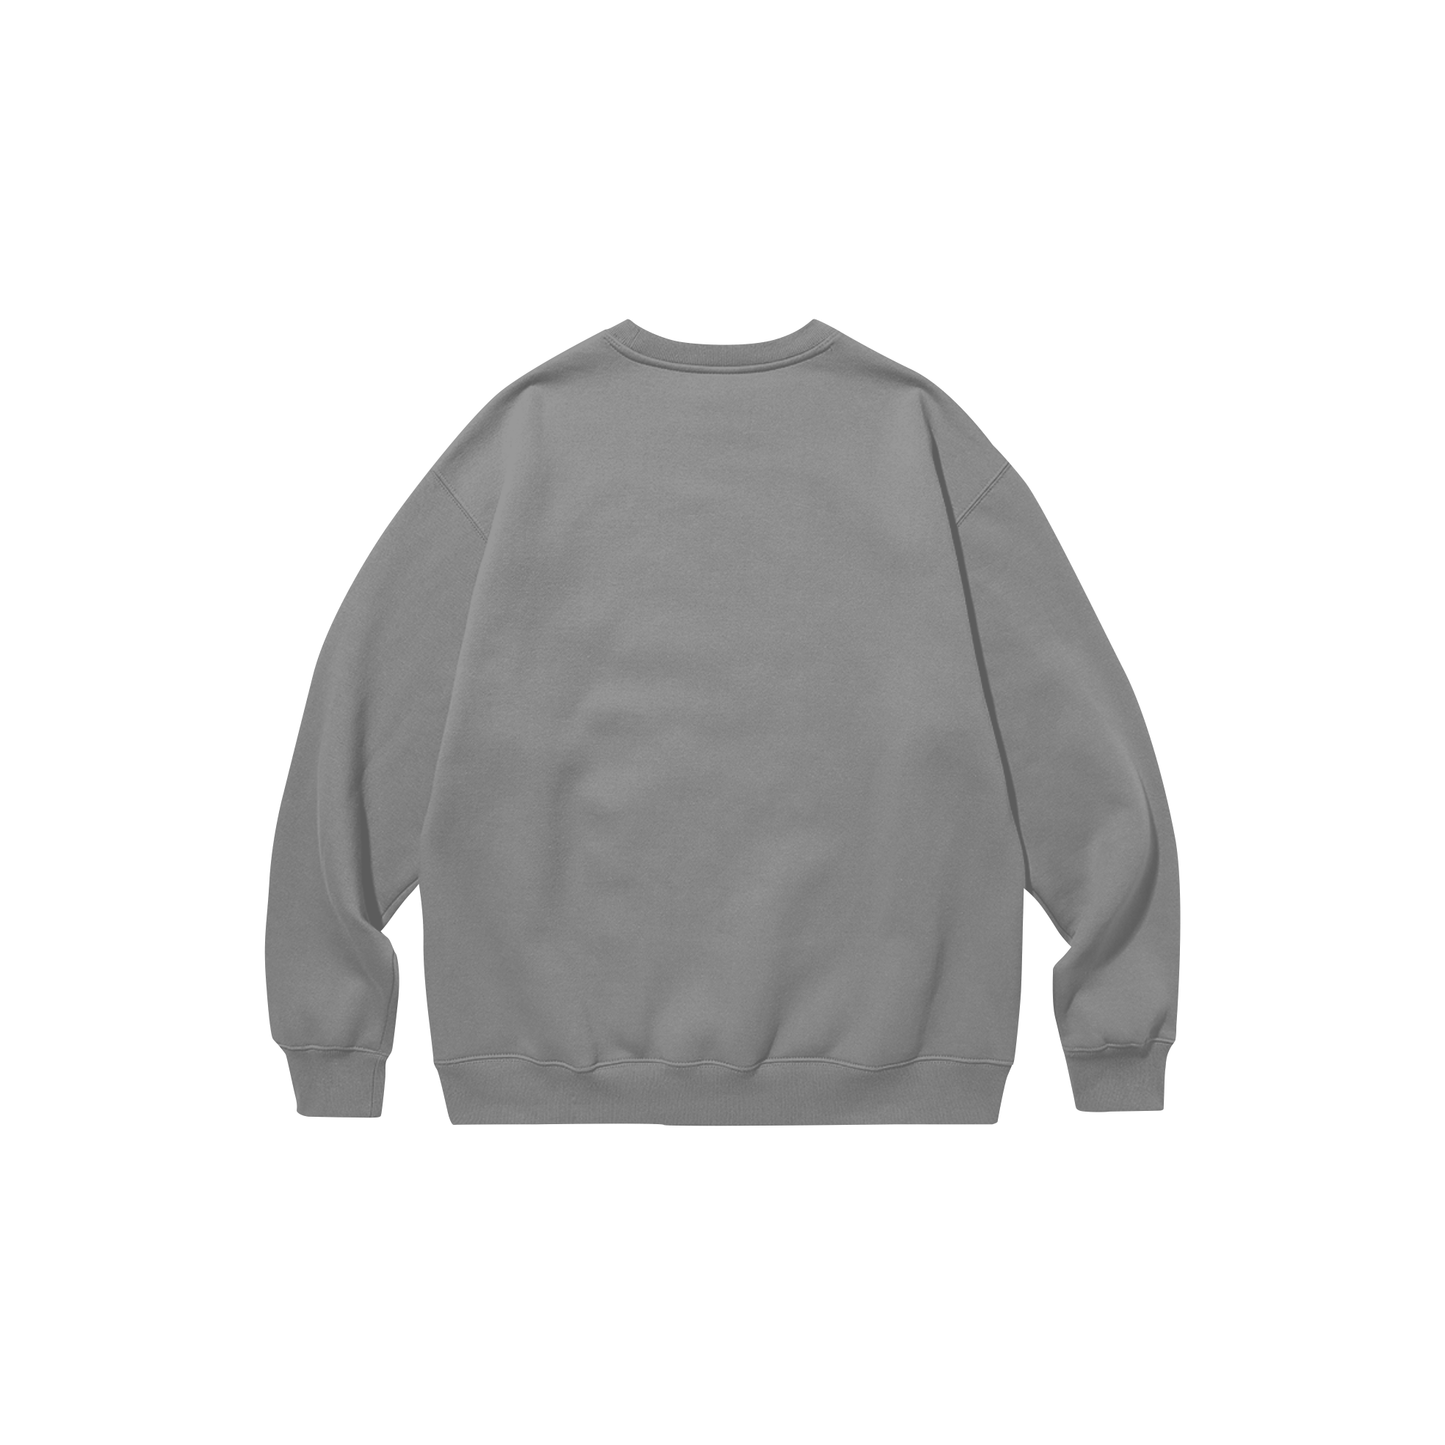 TILT. Sweatshirt Grey